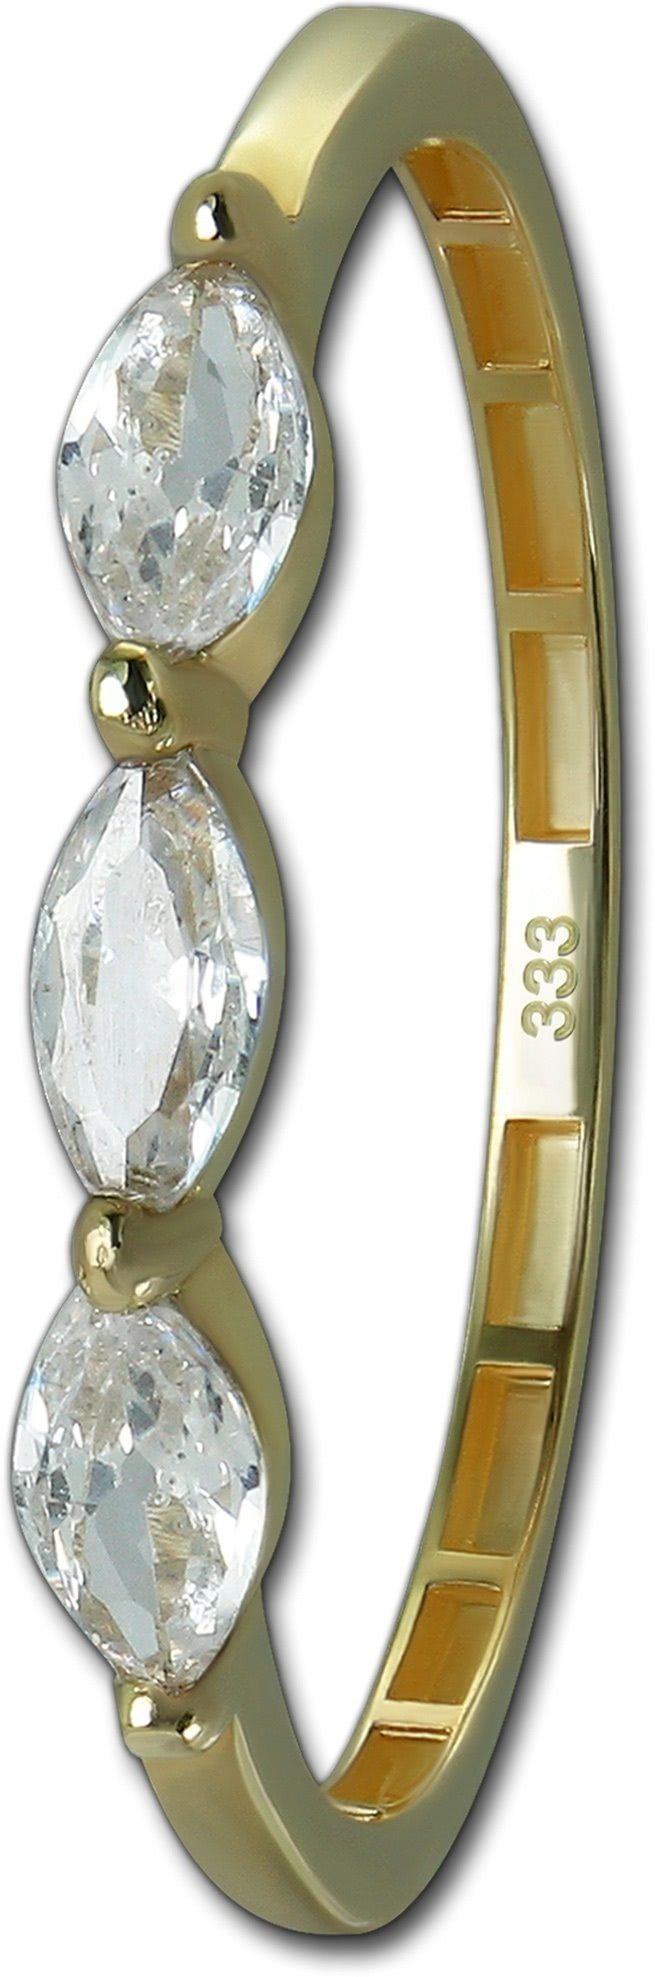 GoldDream Goldring GoldDream Gold Ring Shine Gr.54 (Fingerring), Damen Ring Echtgold, 333er Gelbgold gold, weiß Shine